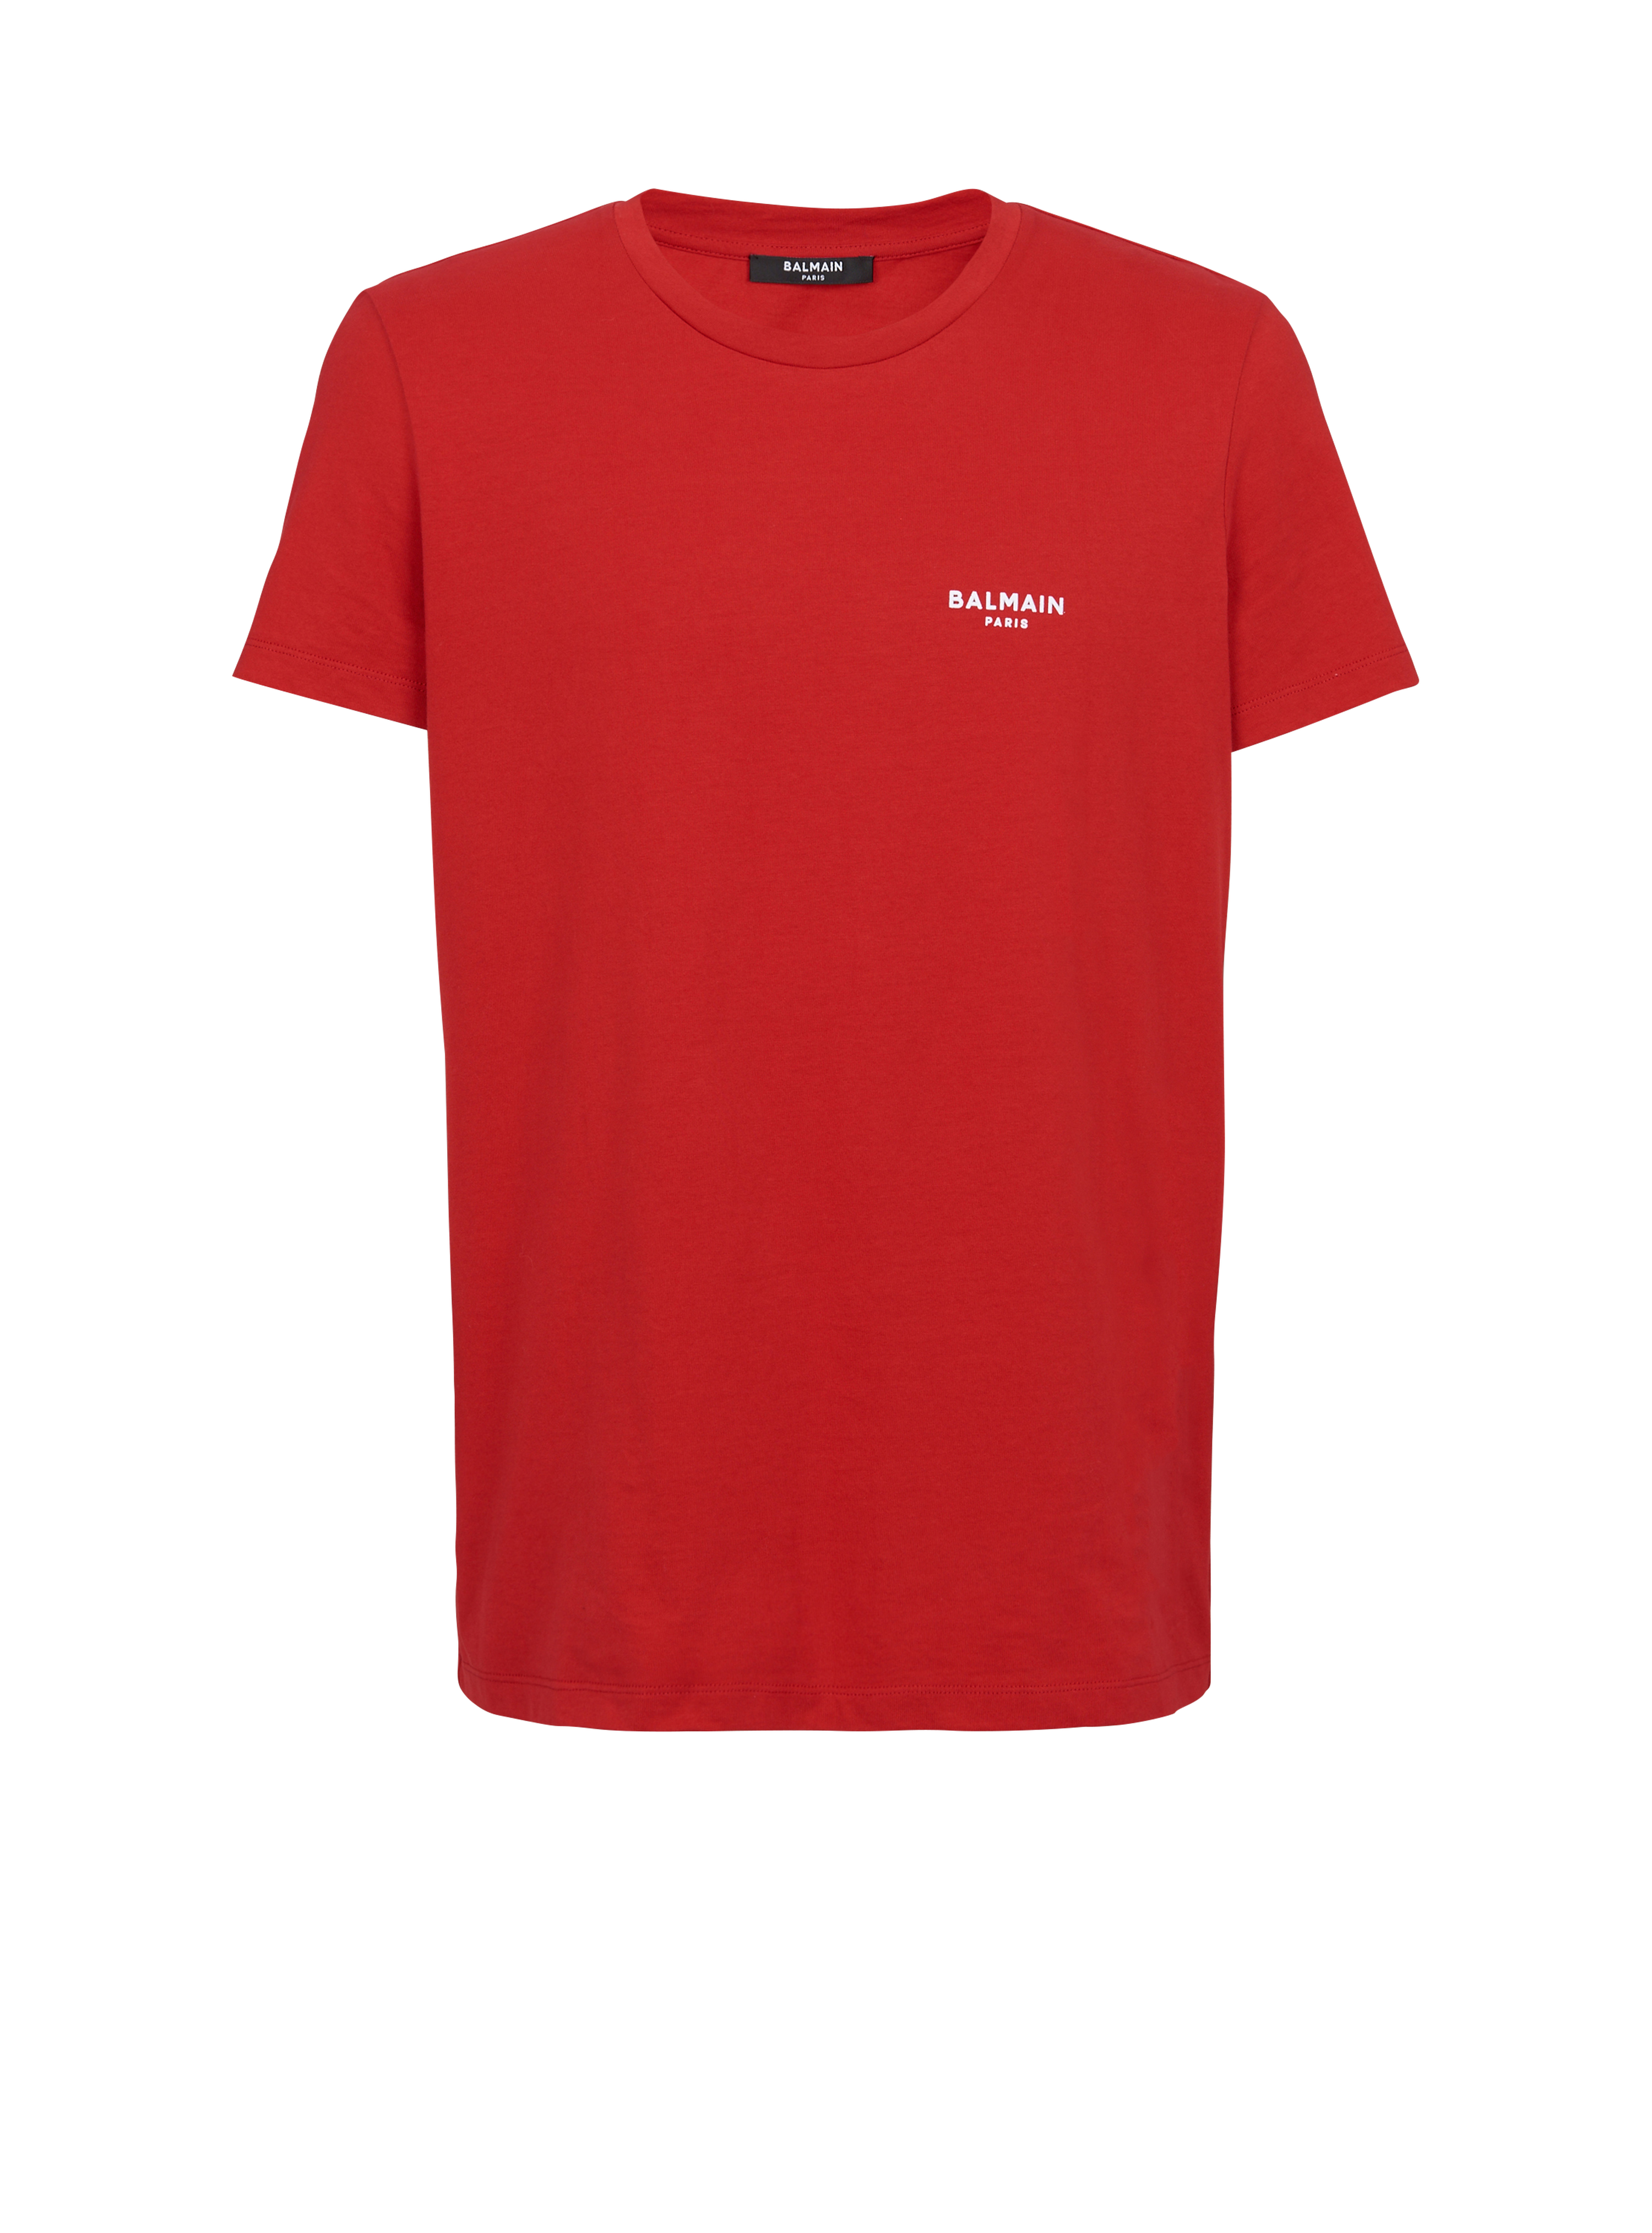 T-shirt en coton floqué petit logo Balmain Paris, rouge